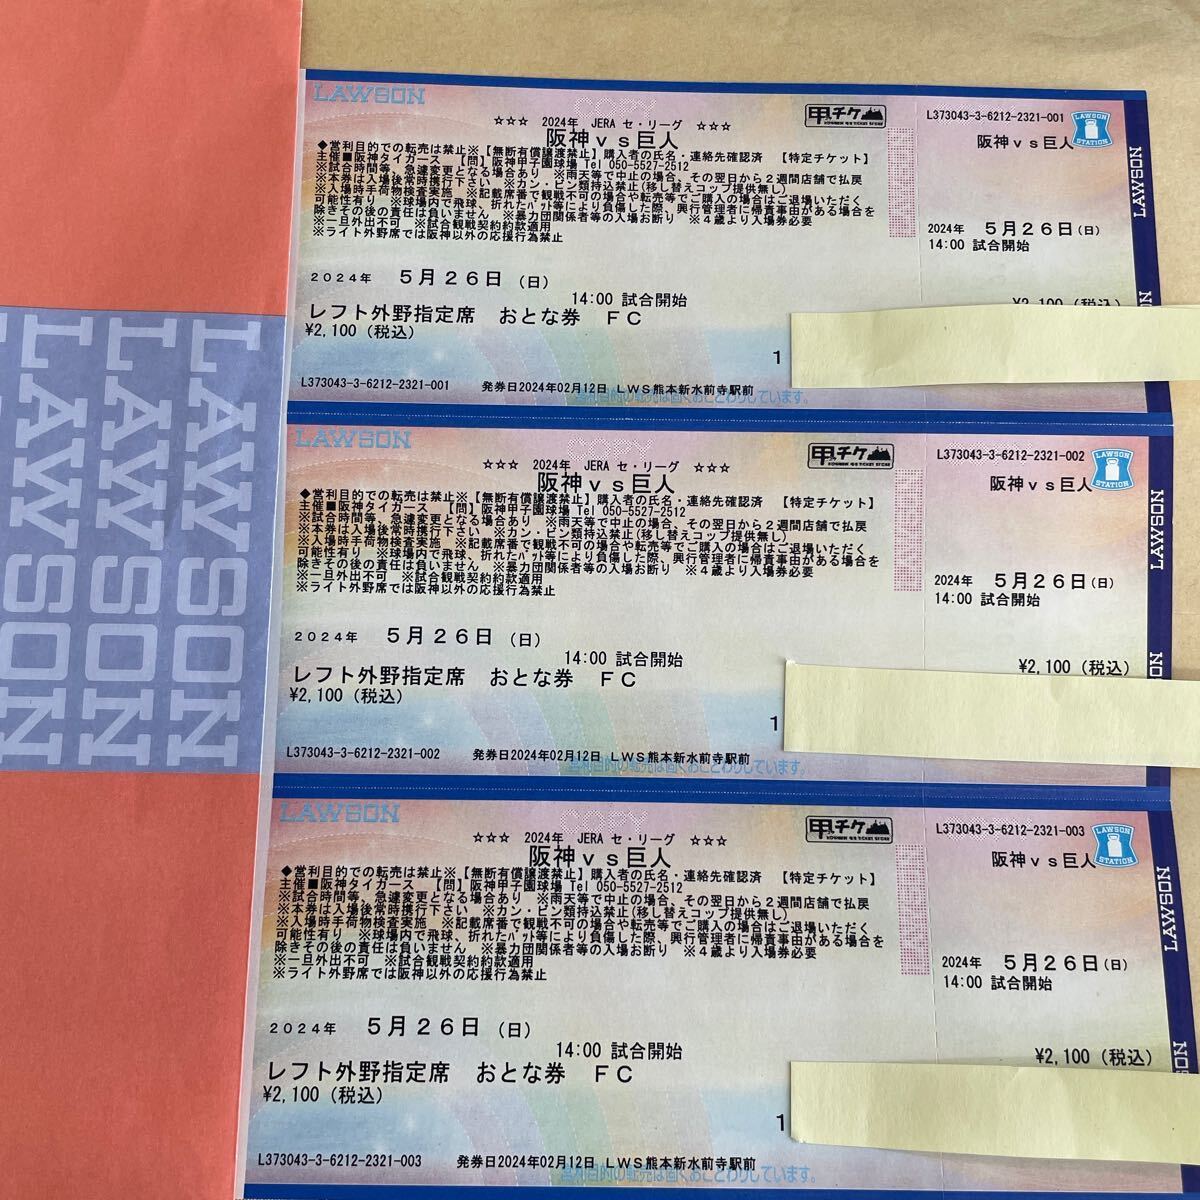  Hanshin vs Giants Hanshin Koshien Stadium 5 месяц 26 день левый вне . внизу уровень роза сиденье 3 листов 1 иен старт билет немедленная отправка 